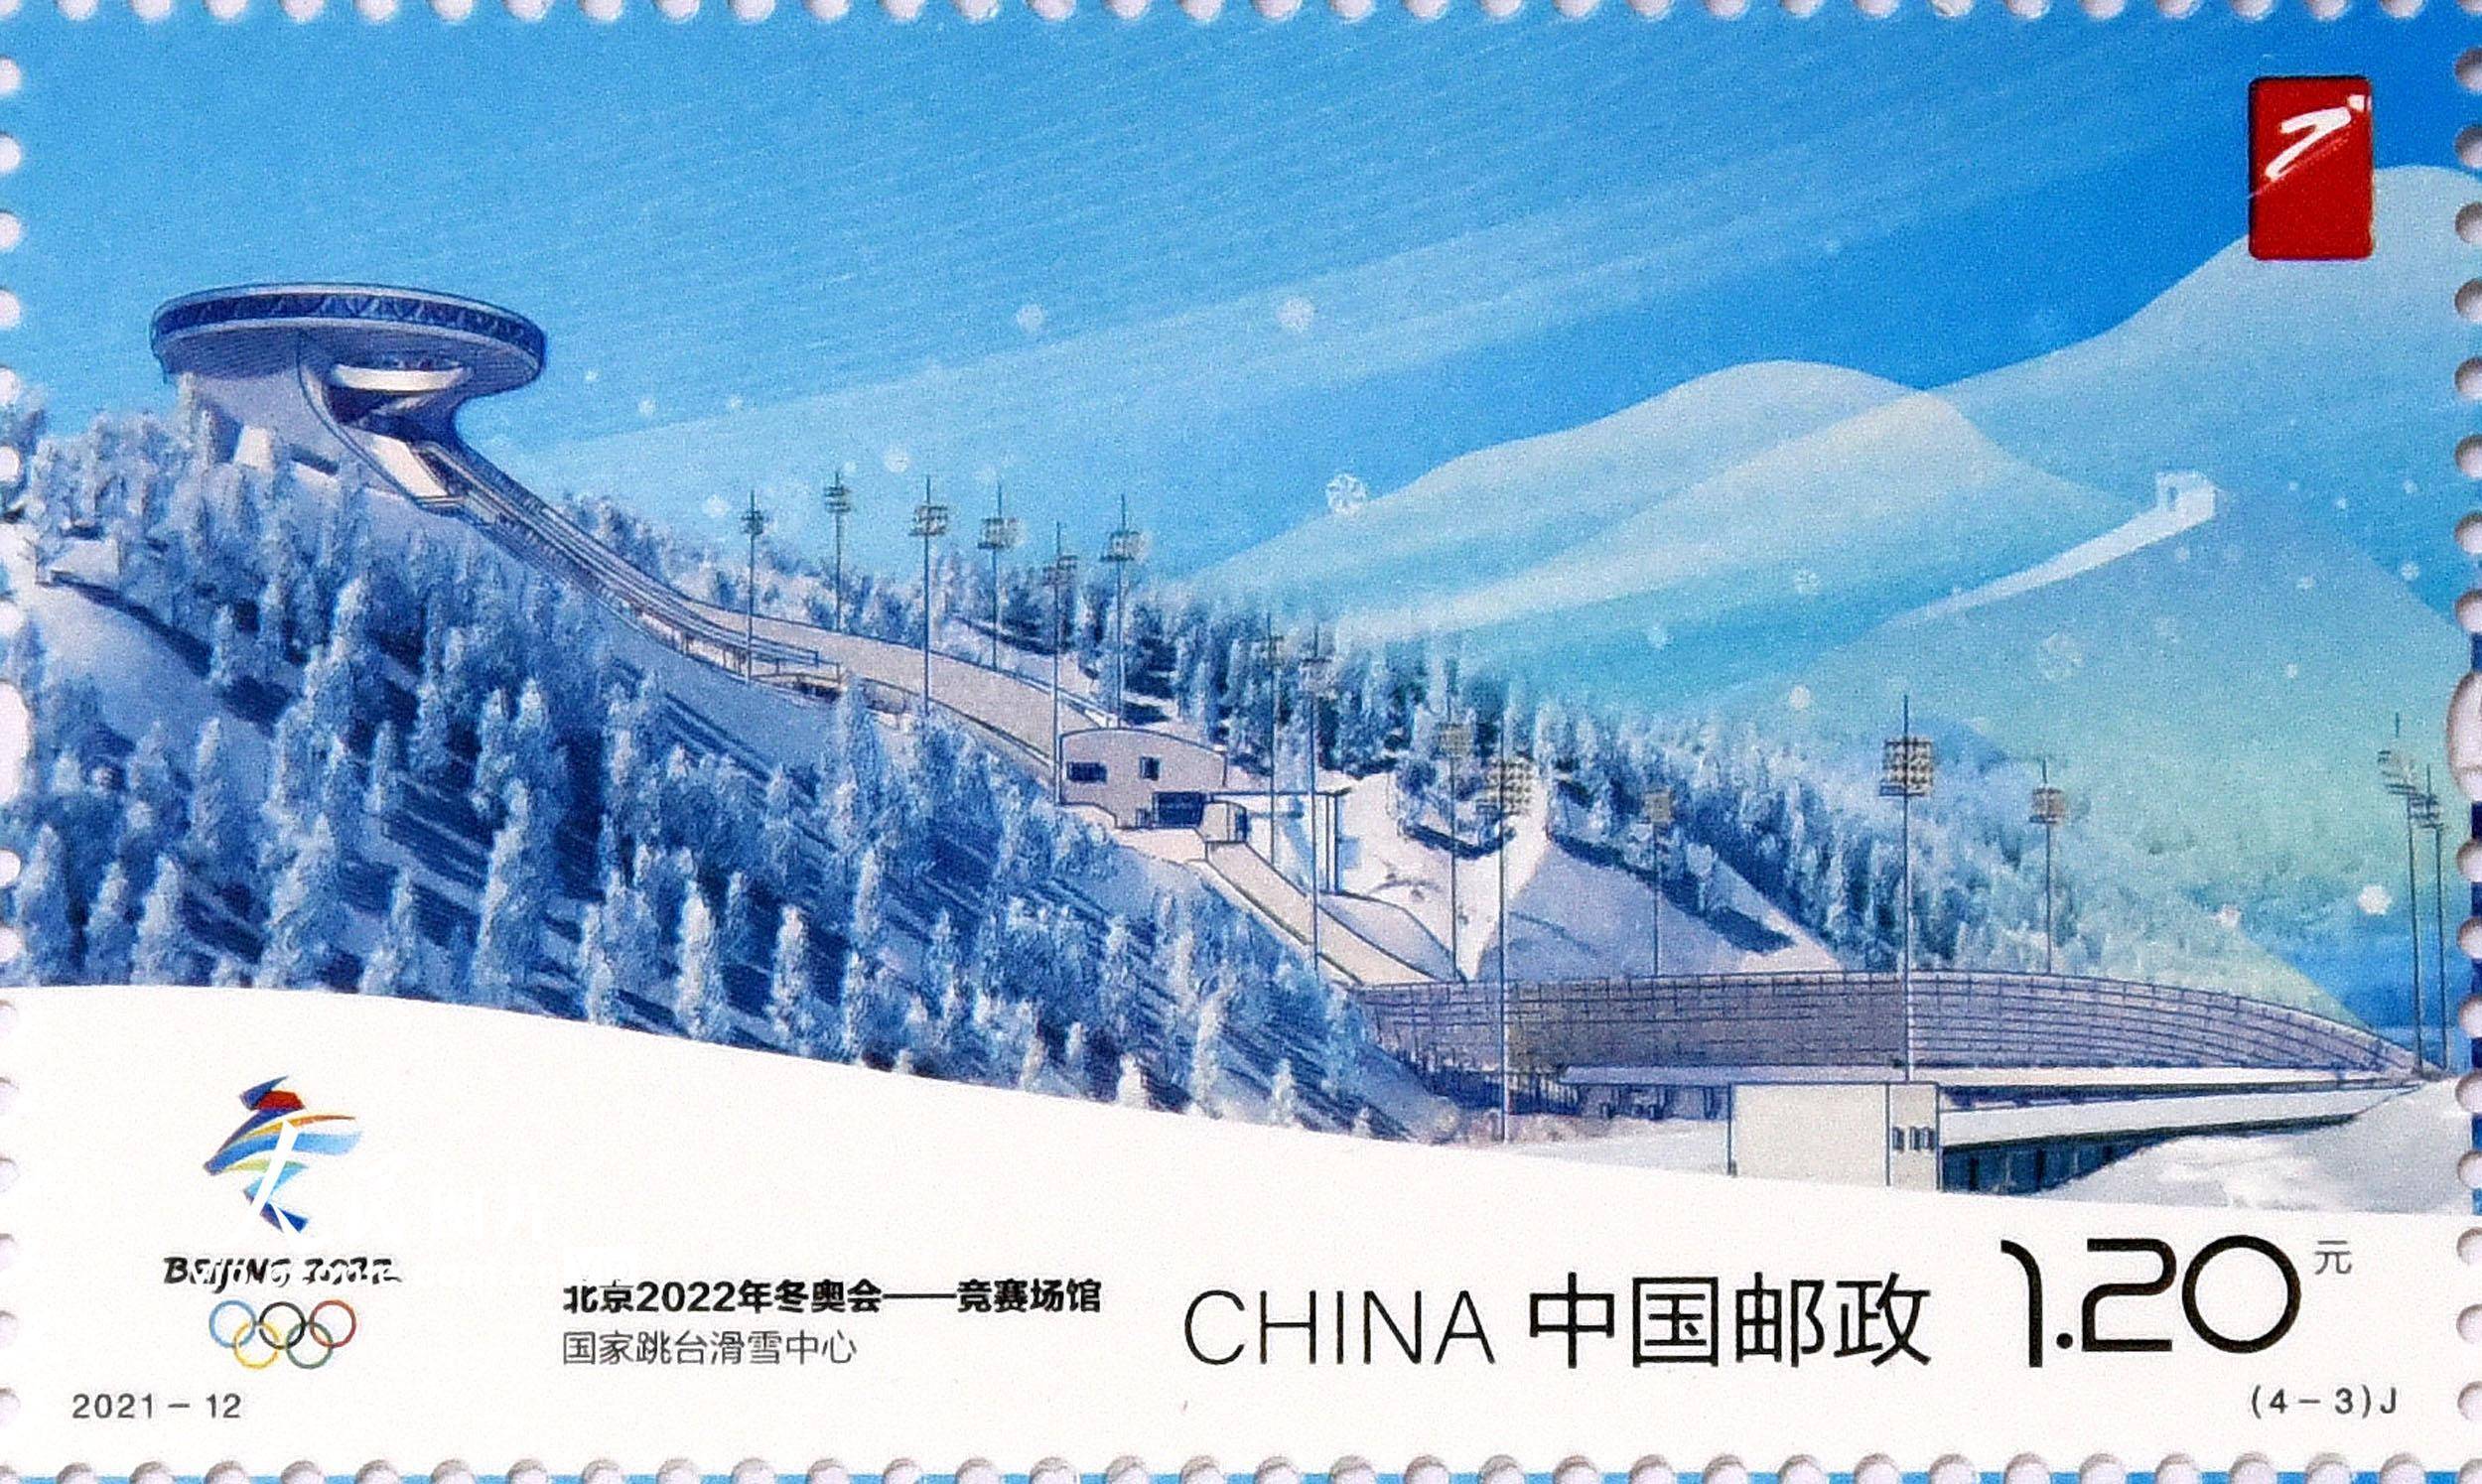 2021年6月23日,中国邮政发行《北京2022年冬奥会——竞赛场馆》纪念